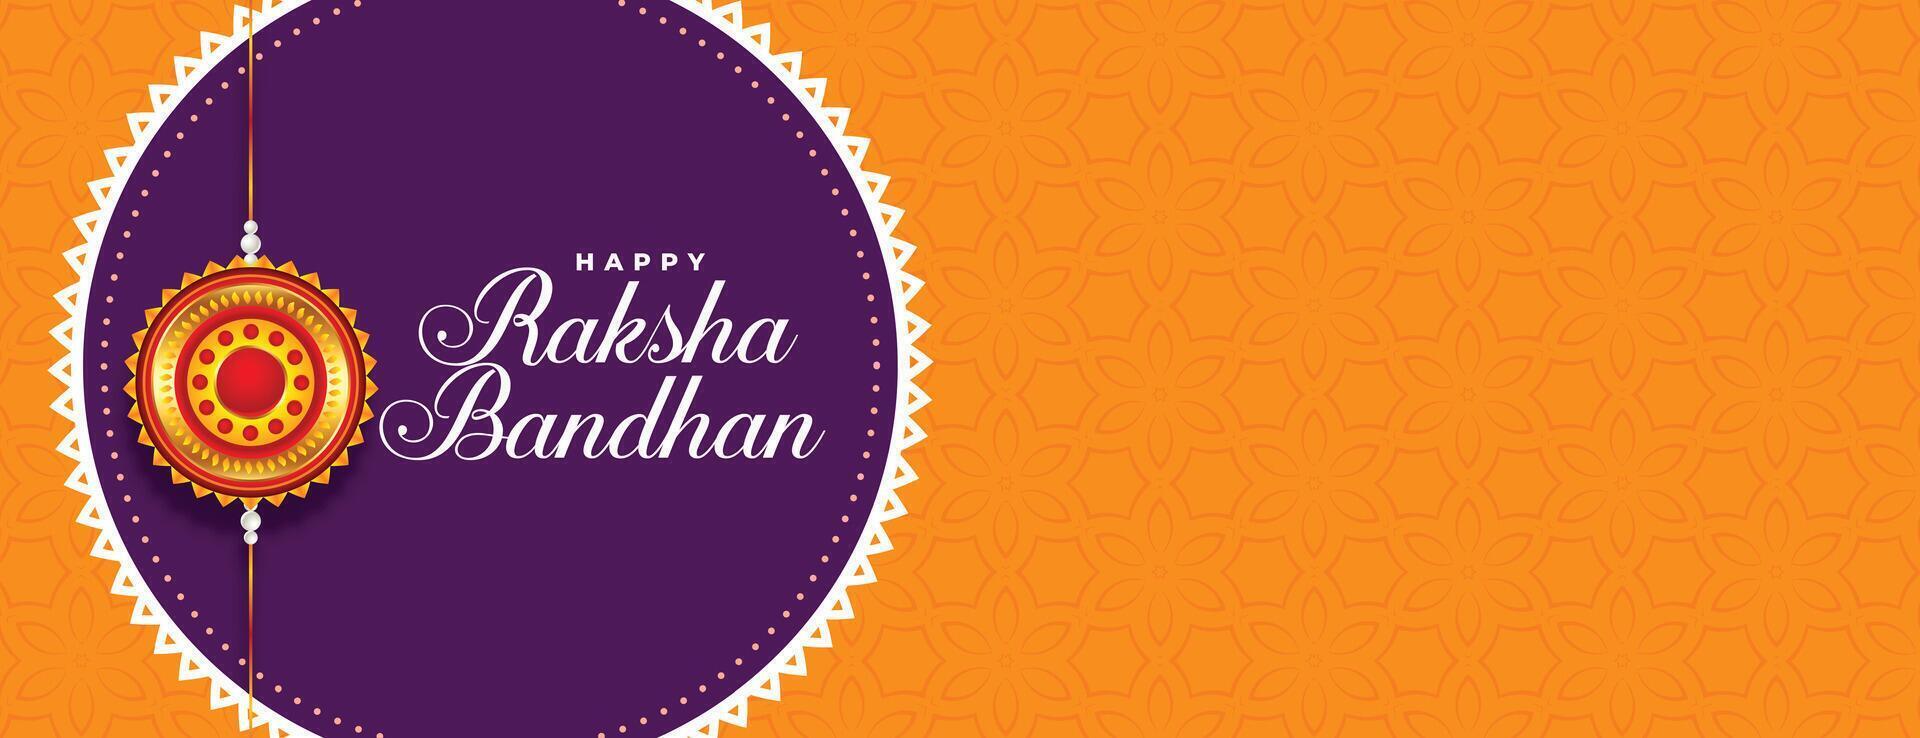 happy raksha bandhan indian festival banner design vector